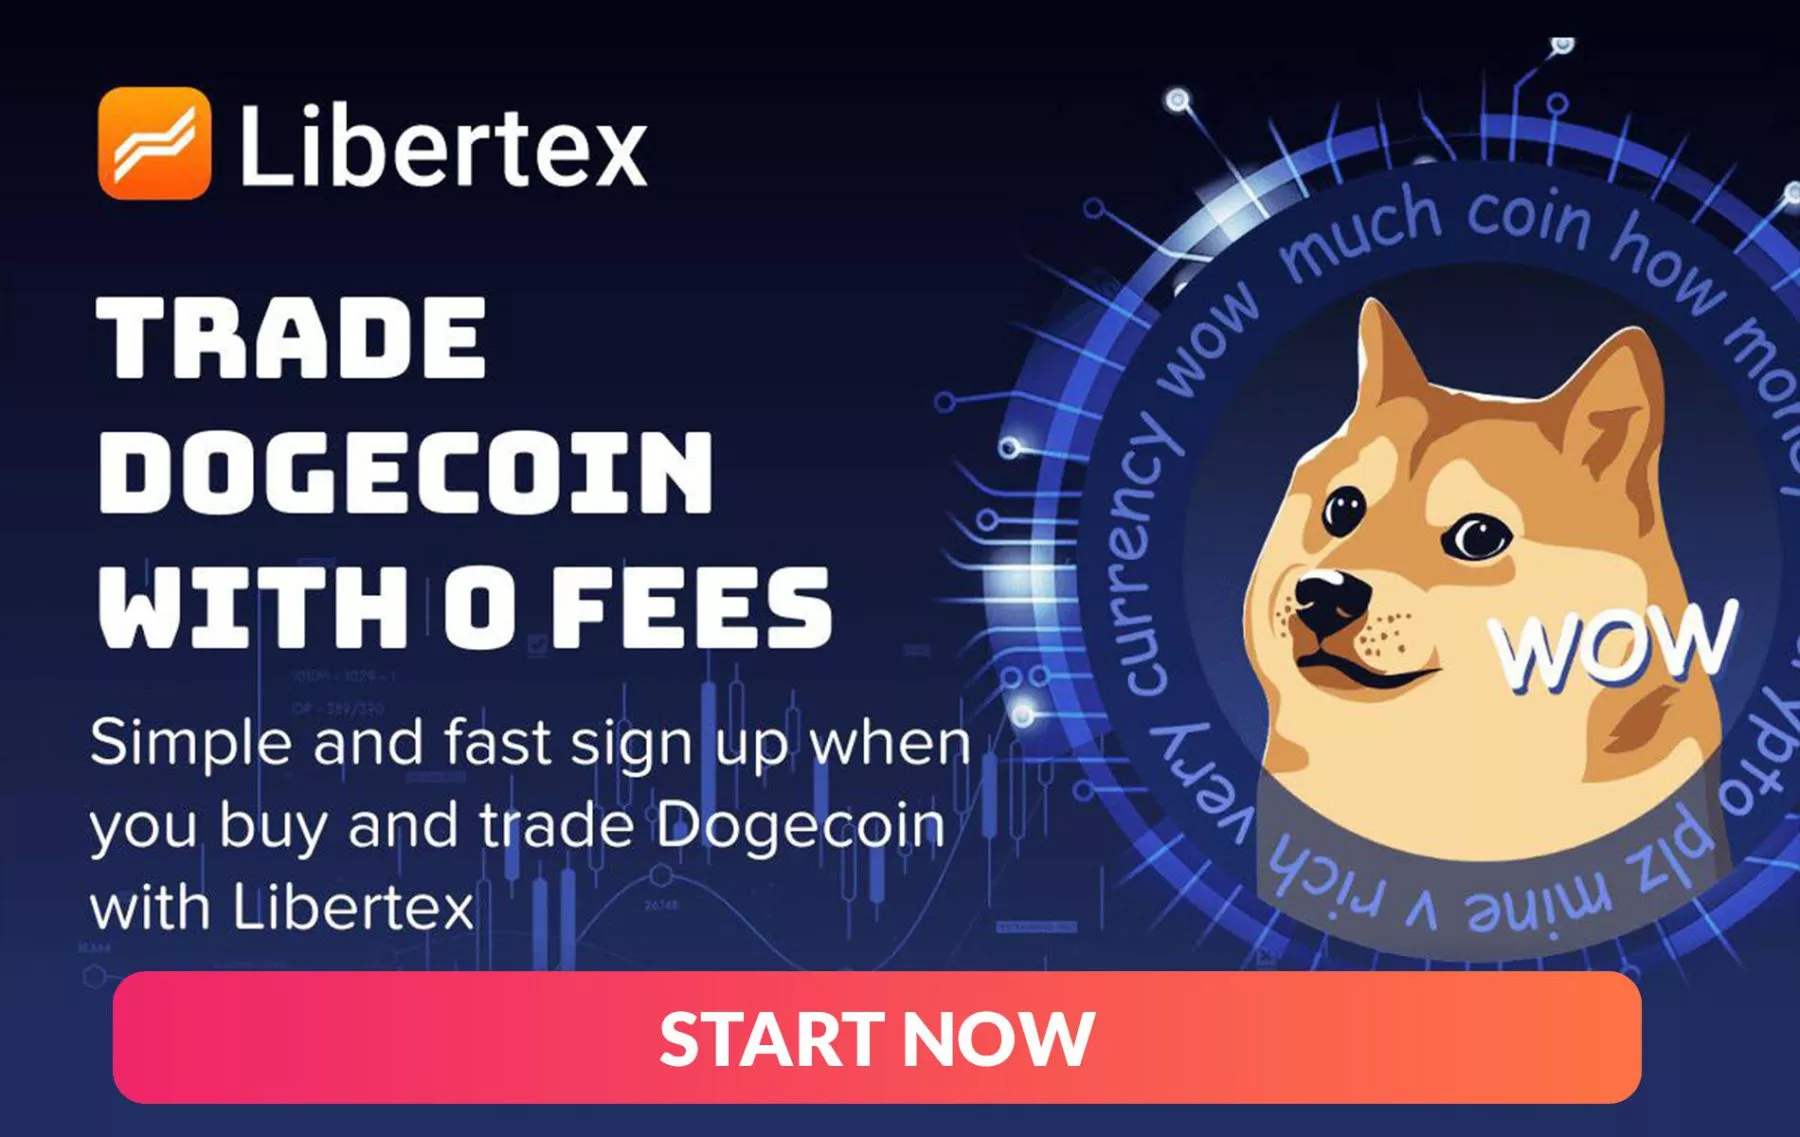 Libertex voegt Dogecoin toe aan platform voor DOGE-handelaren